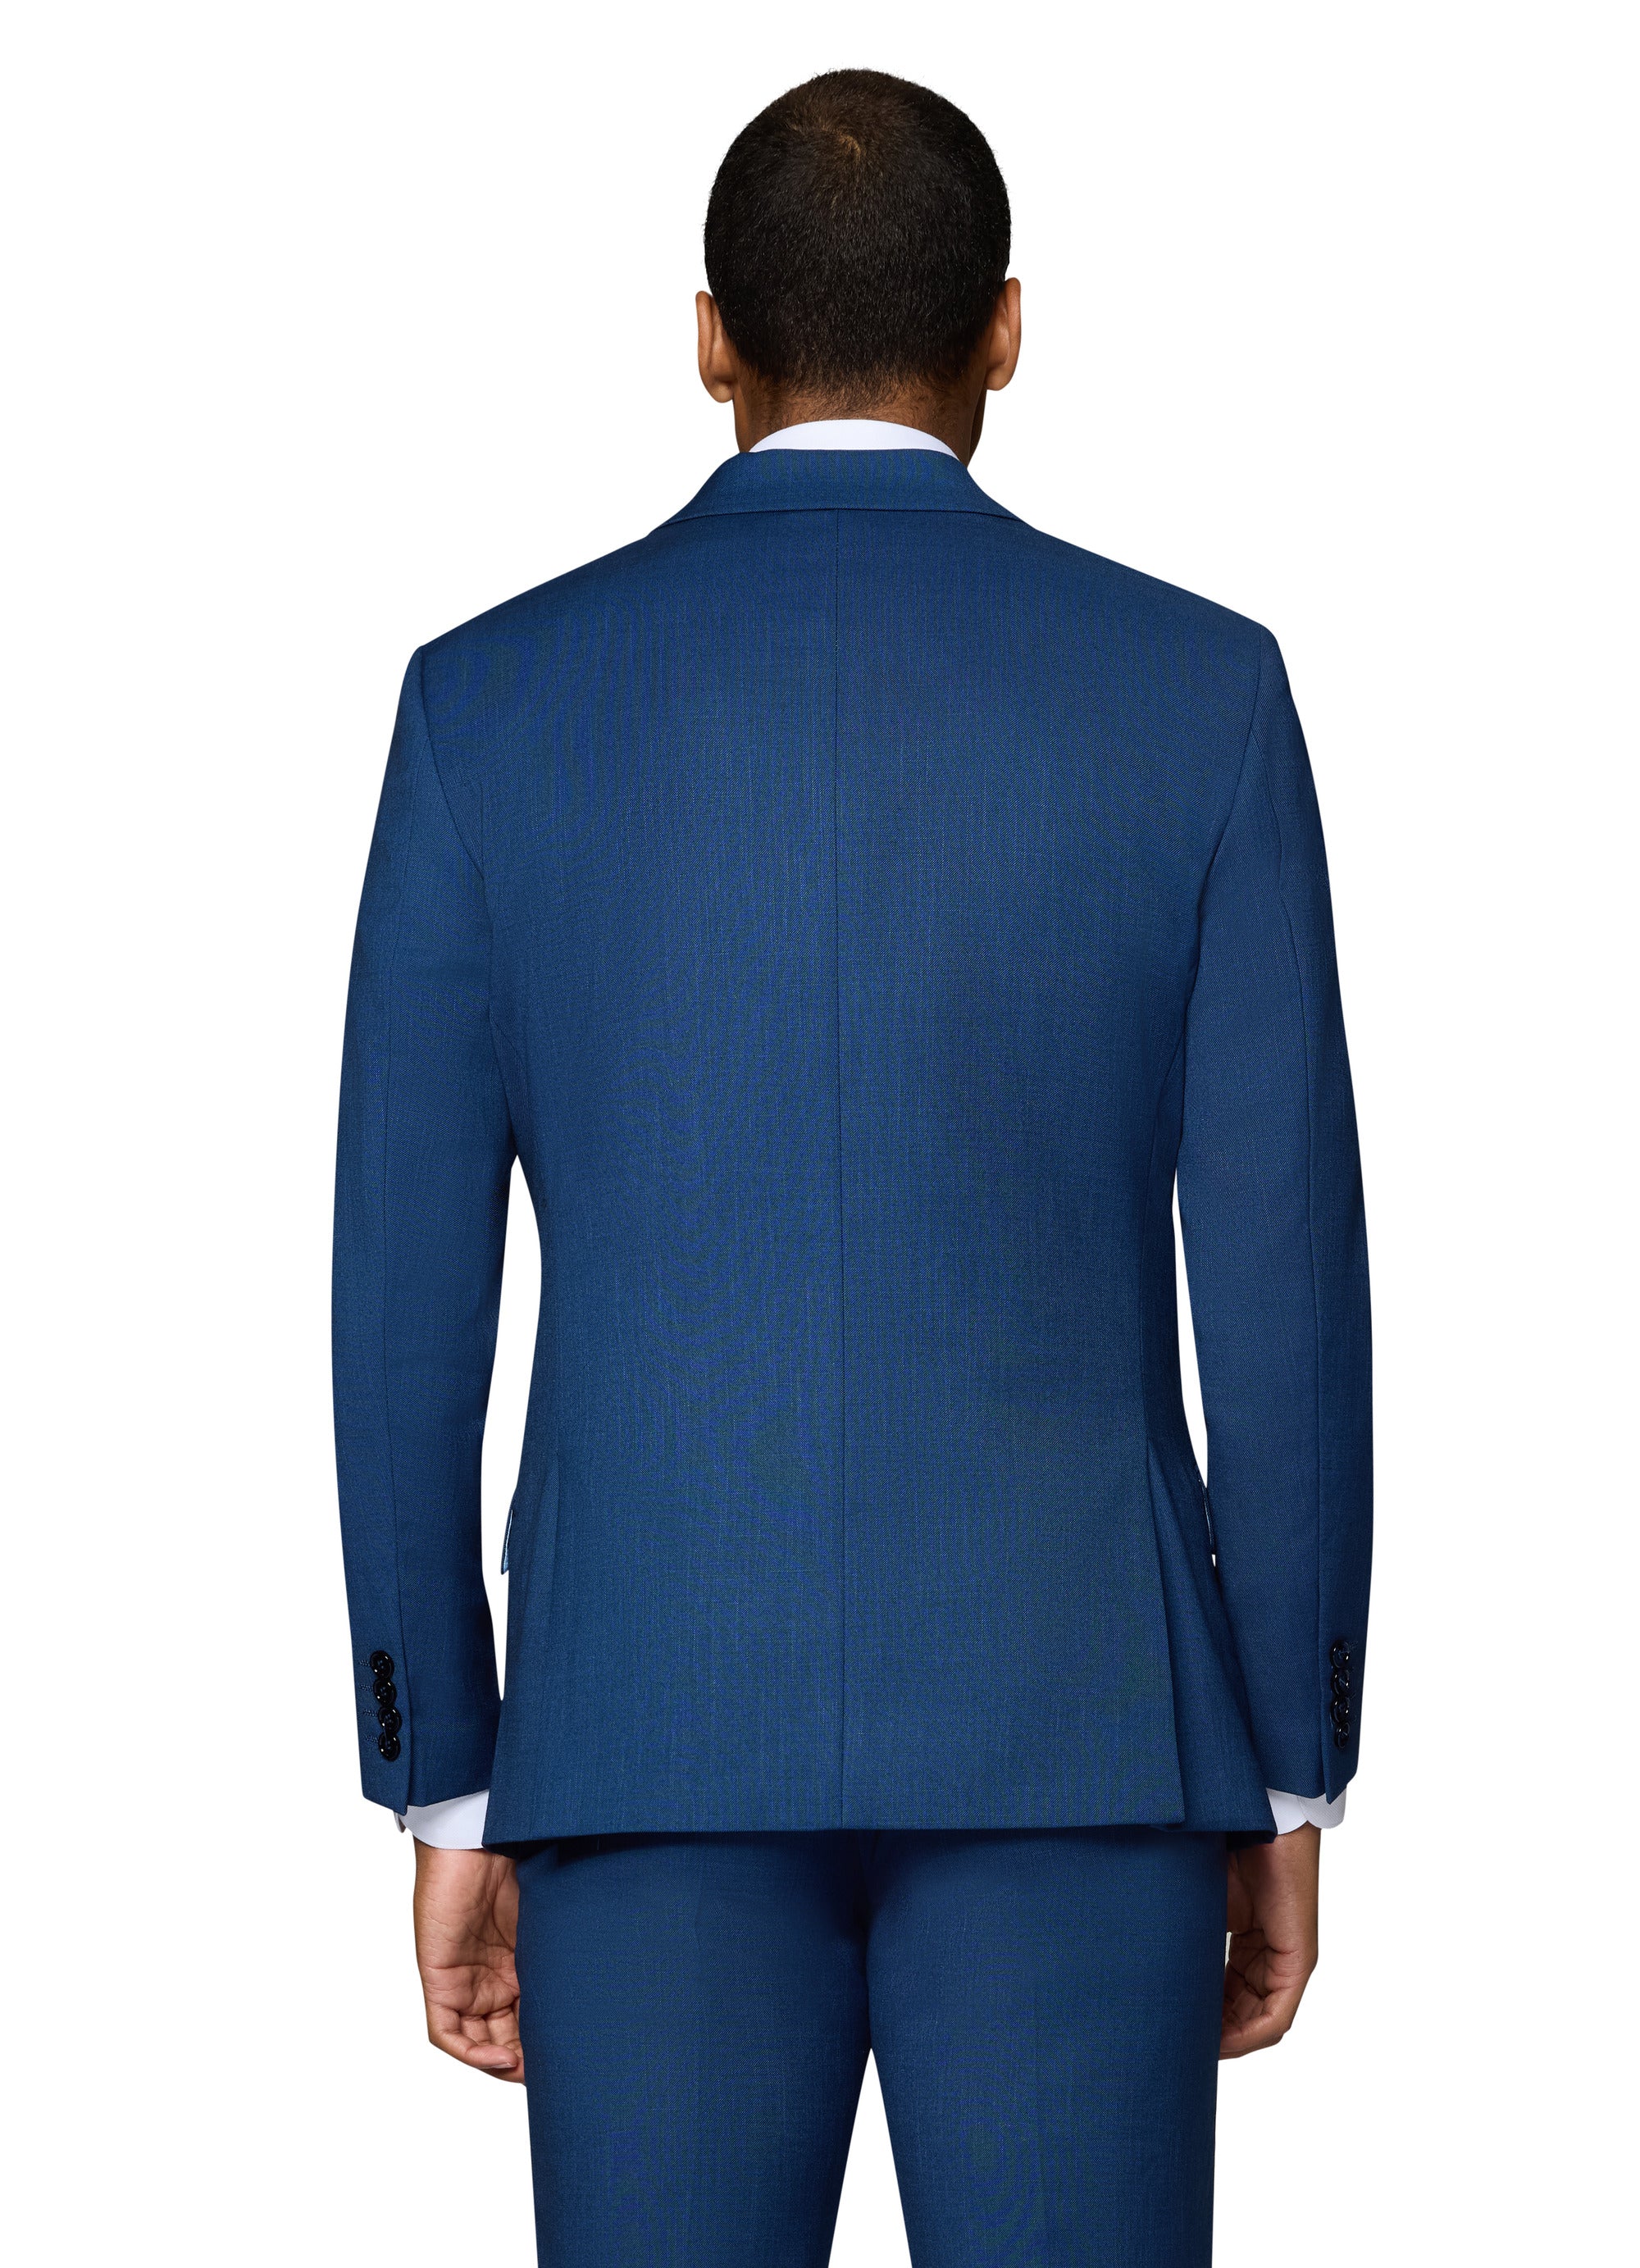 Berragamo Sharkskin Vested Slim Fit New Blue Suit